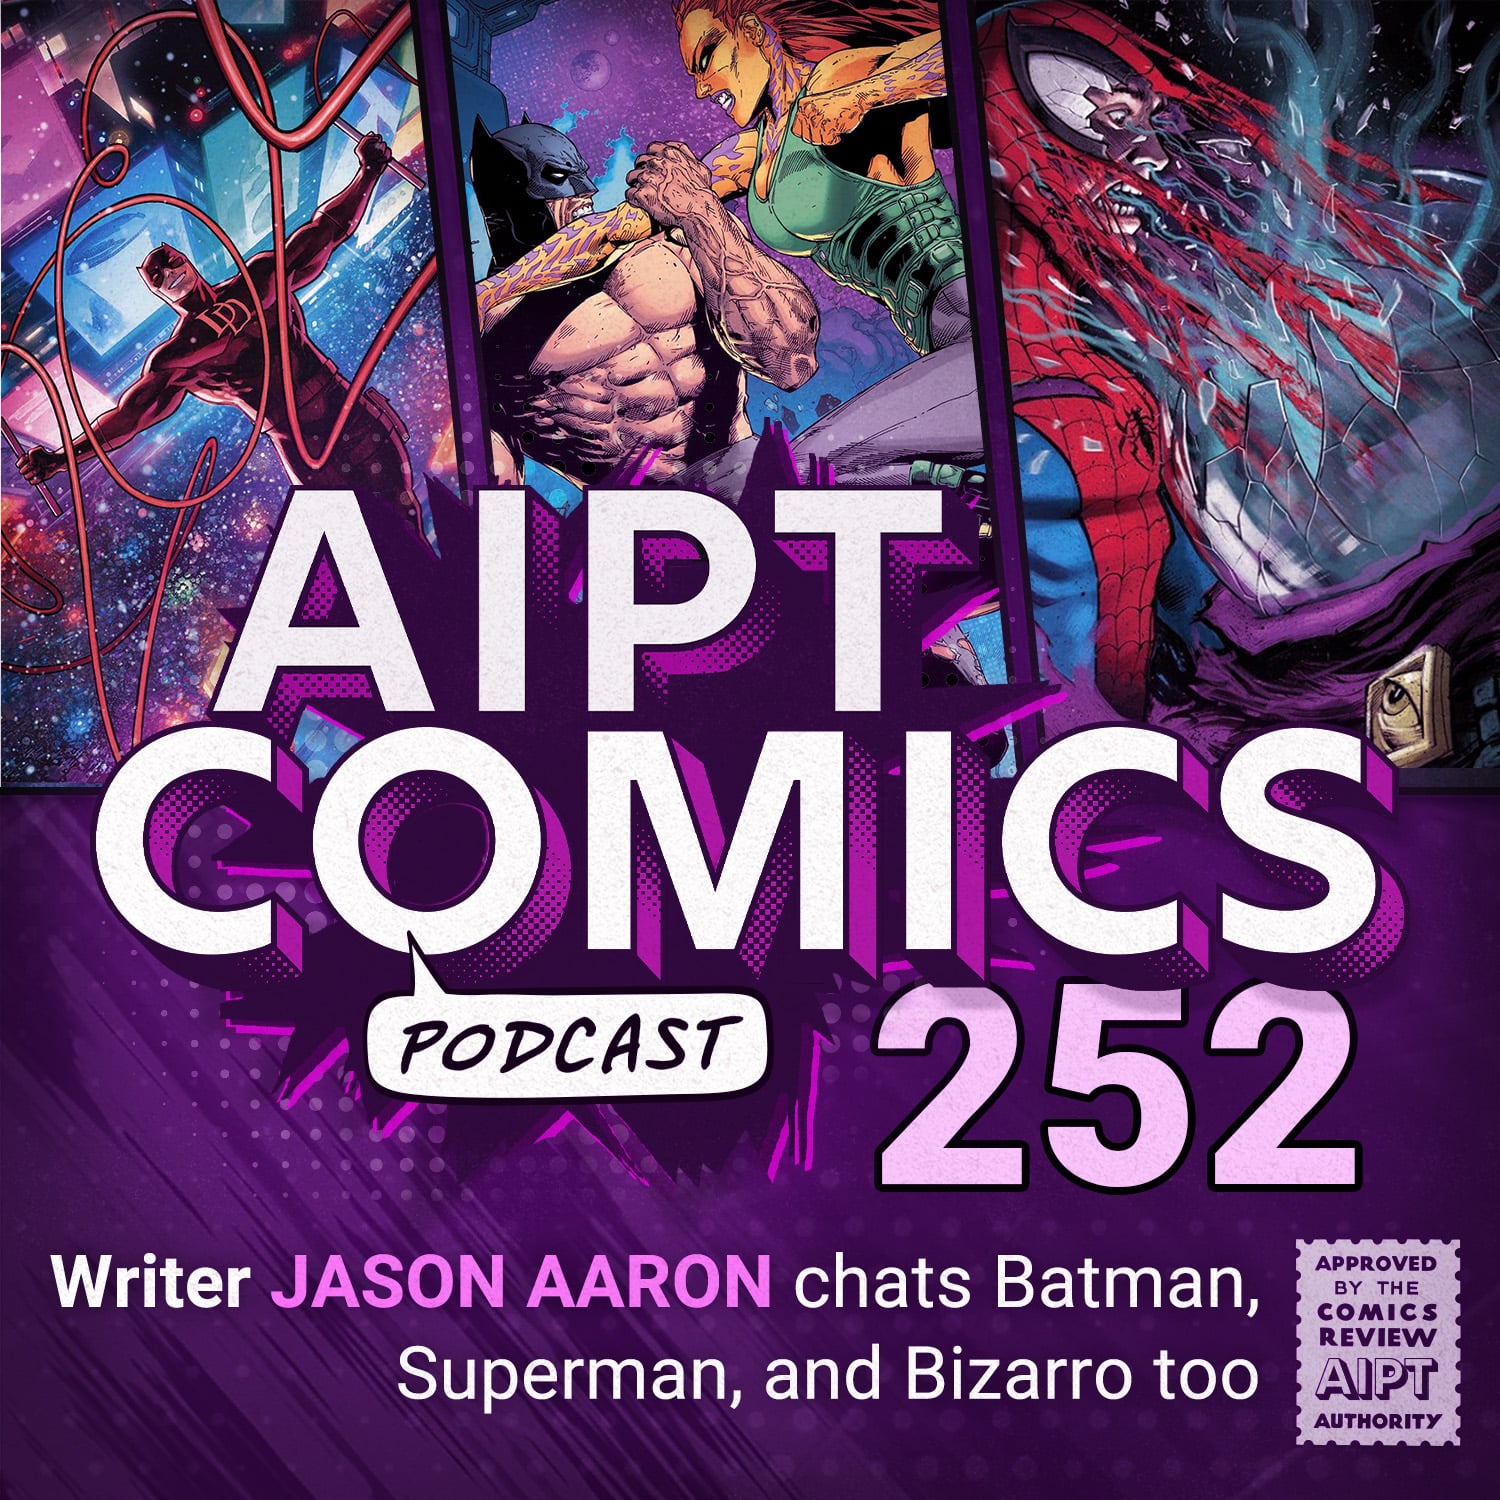 AIPT Comics Podcast Episode 252: Jason Aaron chats Batman, Superman, and Bizarro too